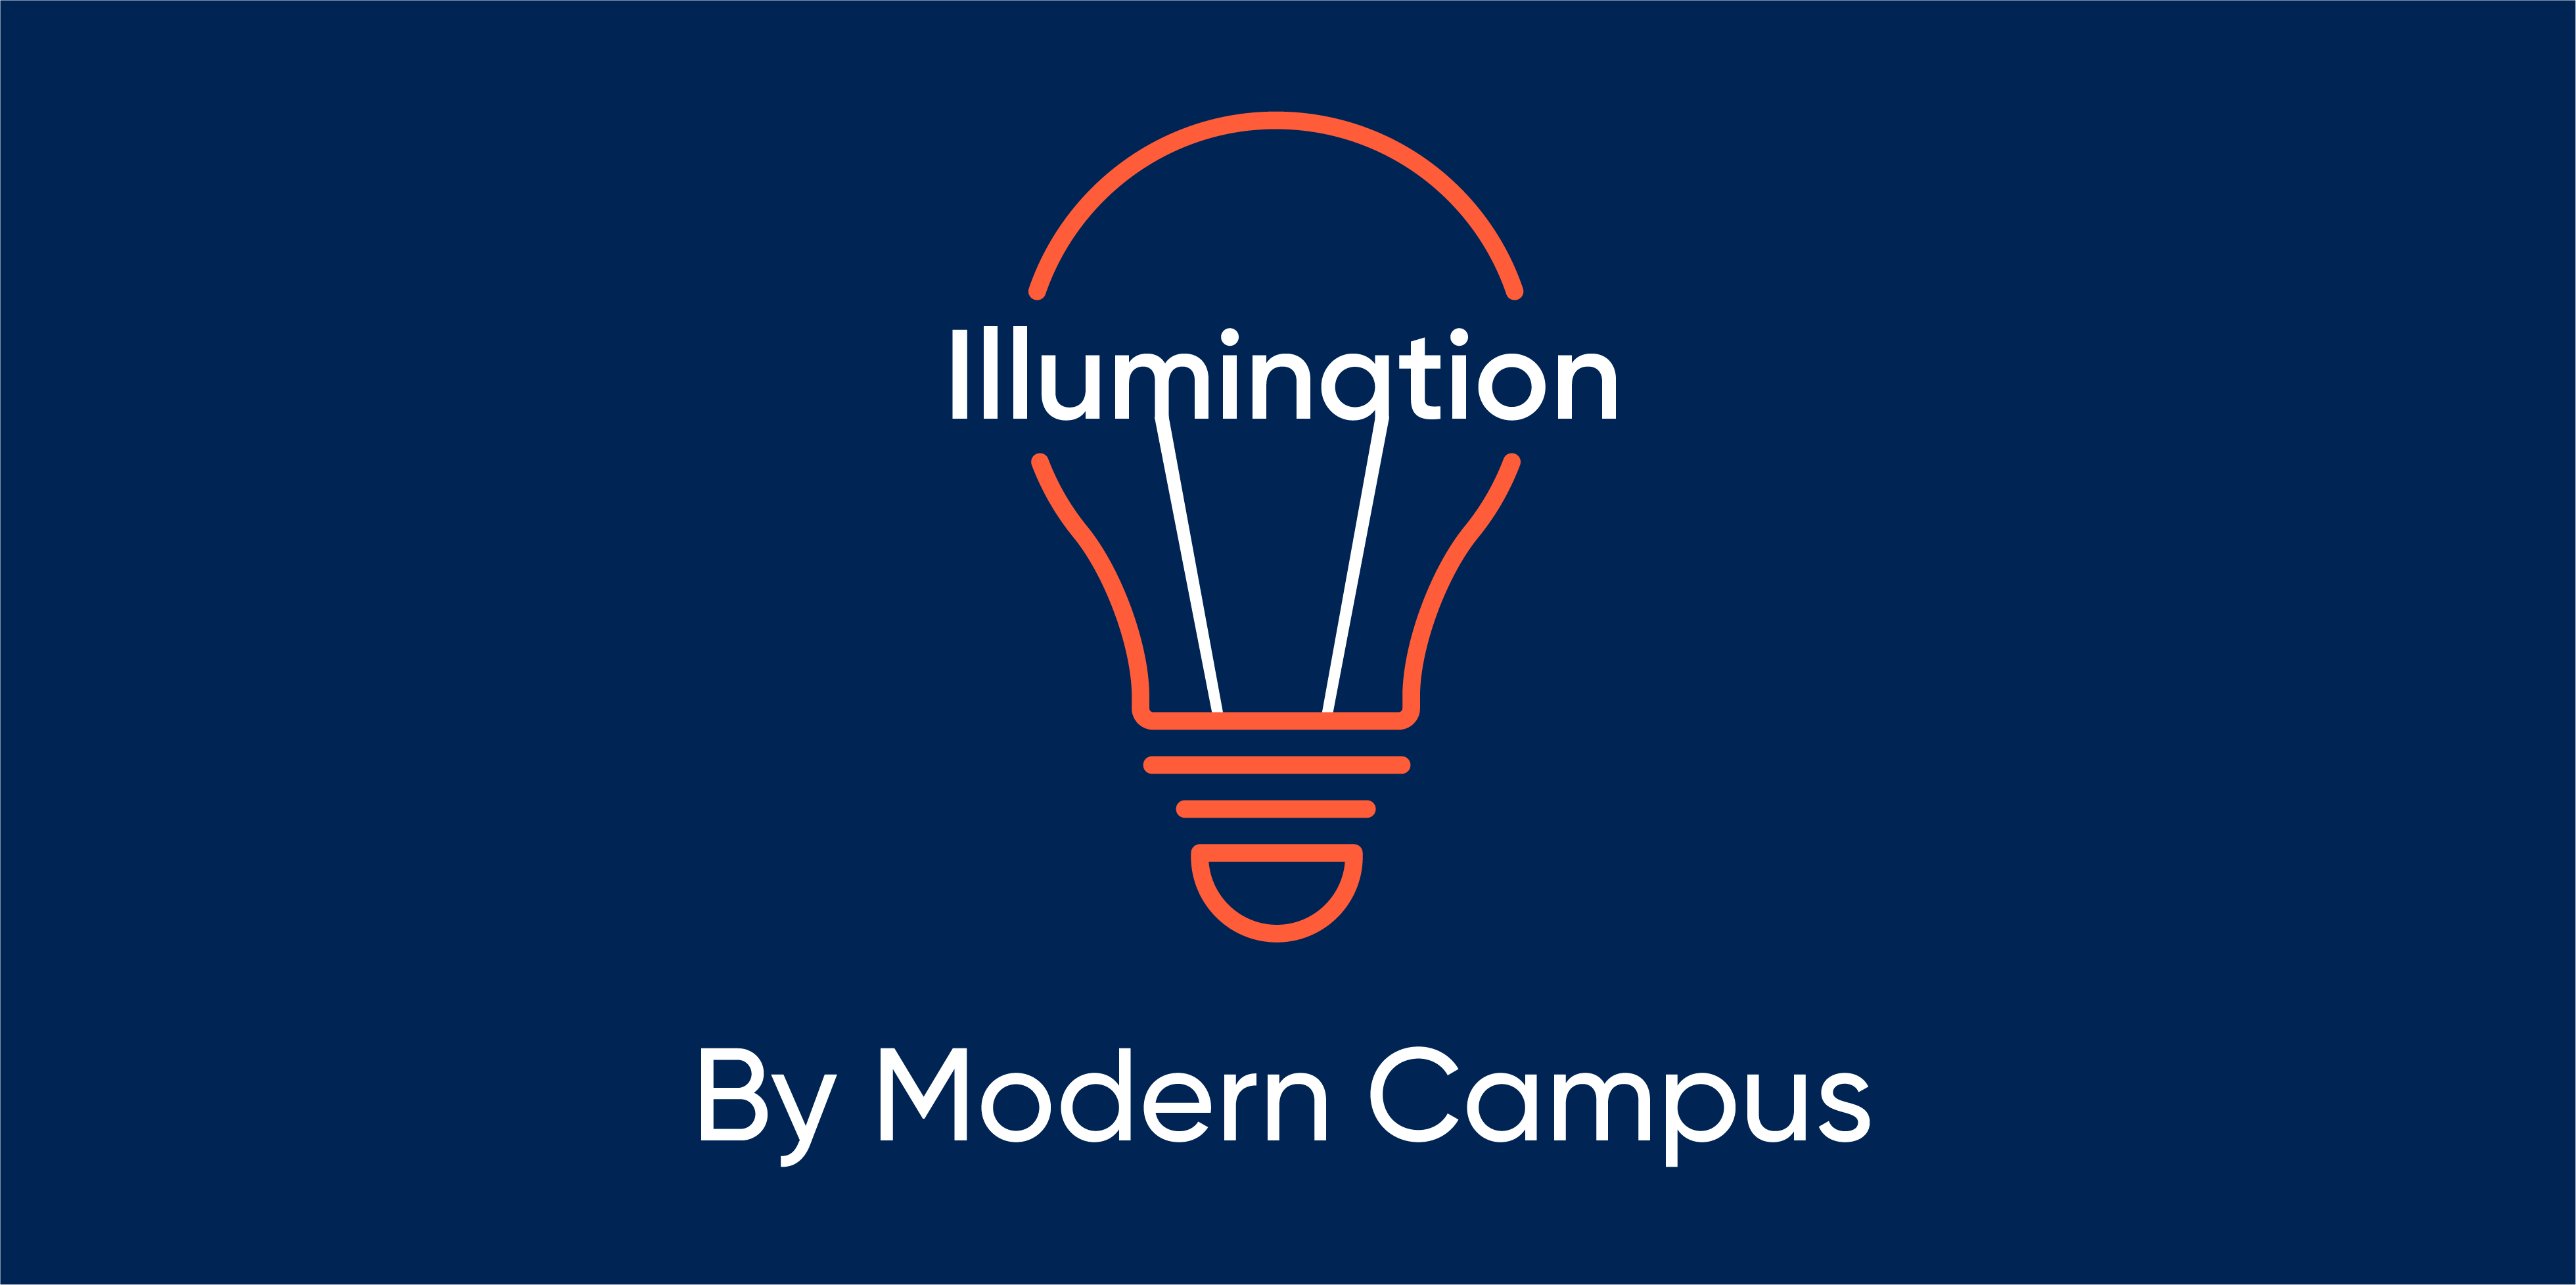 Episode 79: Illumination by Modern Campus